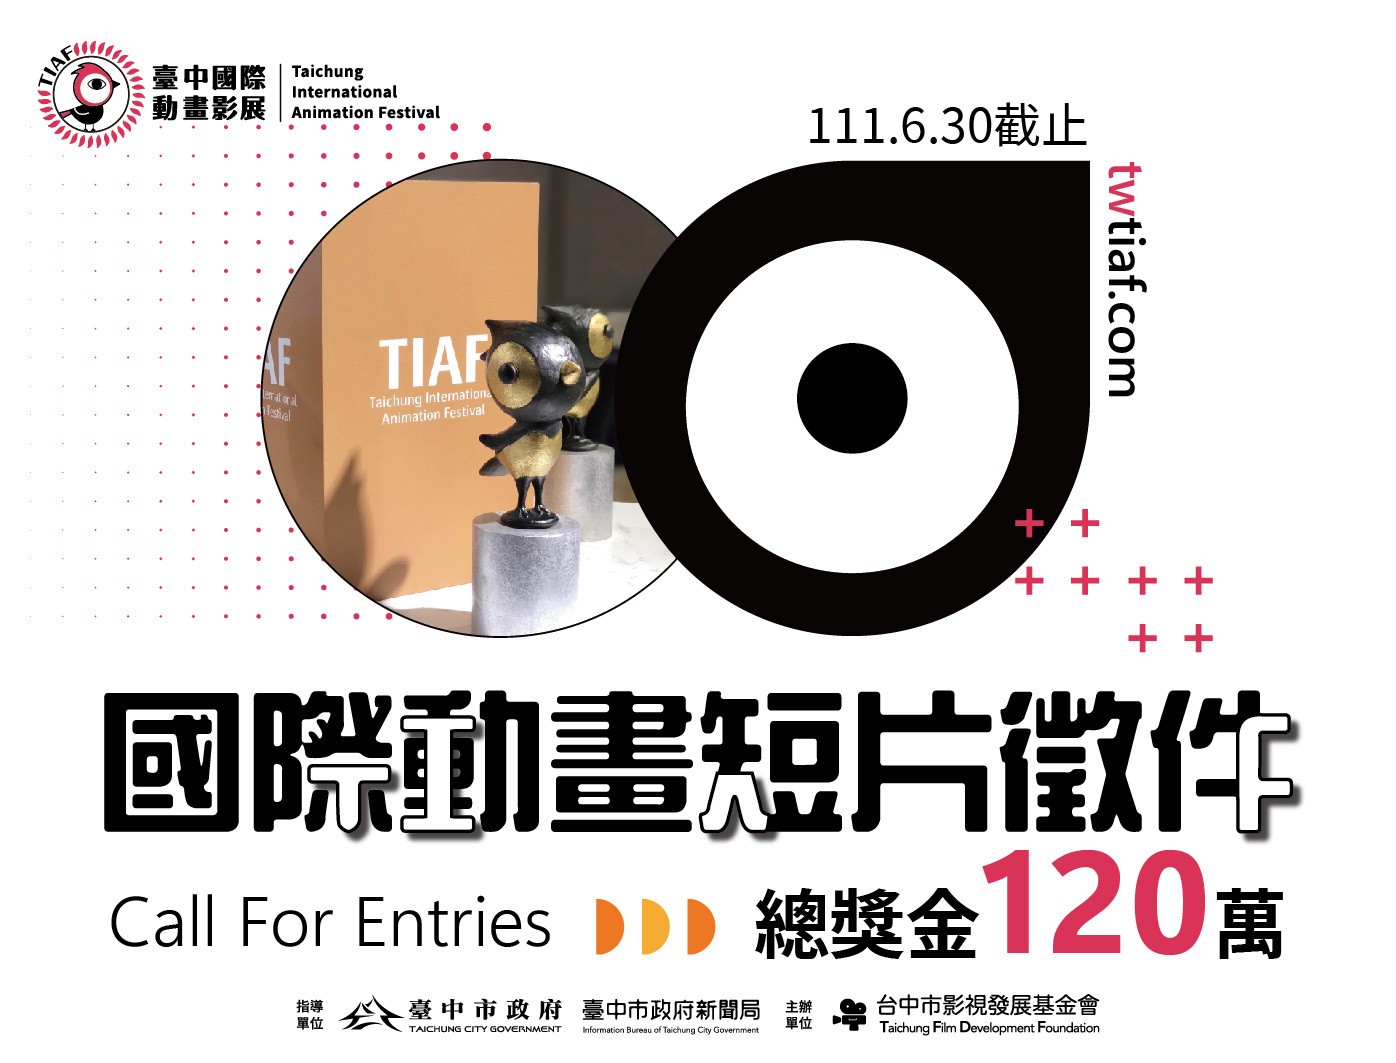 2022「台中國際動畫影展」短片徵件開跑 總獎金 120 萬元